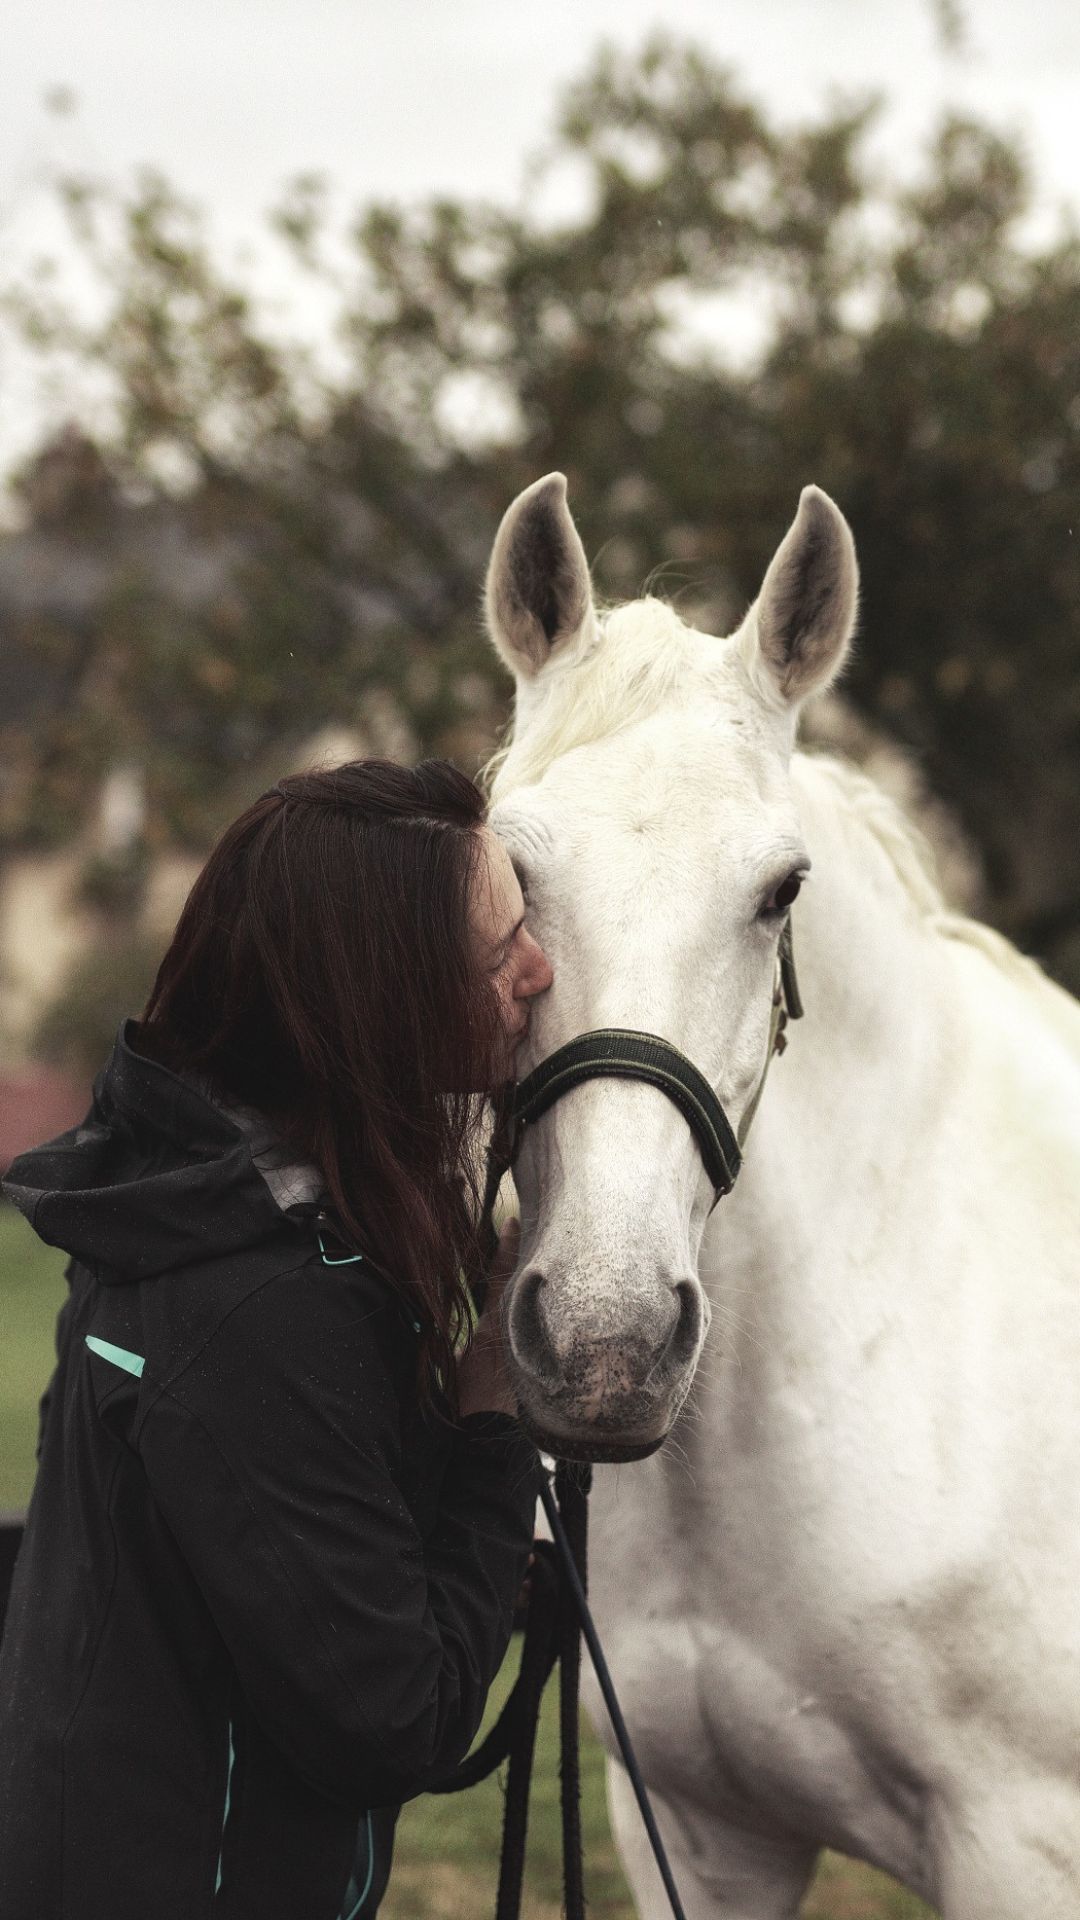 Diane Bourin en train de faire un bisou sur le chanfrein d'un cheval blanc de race Lusitanien. Les lumières sont assez froides, nous sommes en automne.